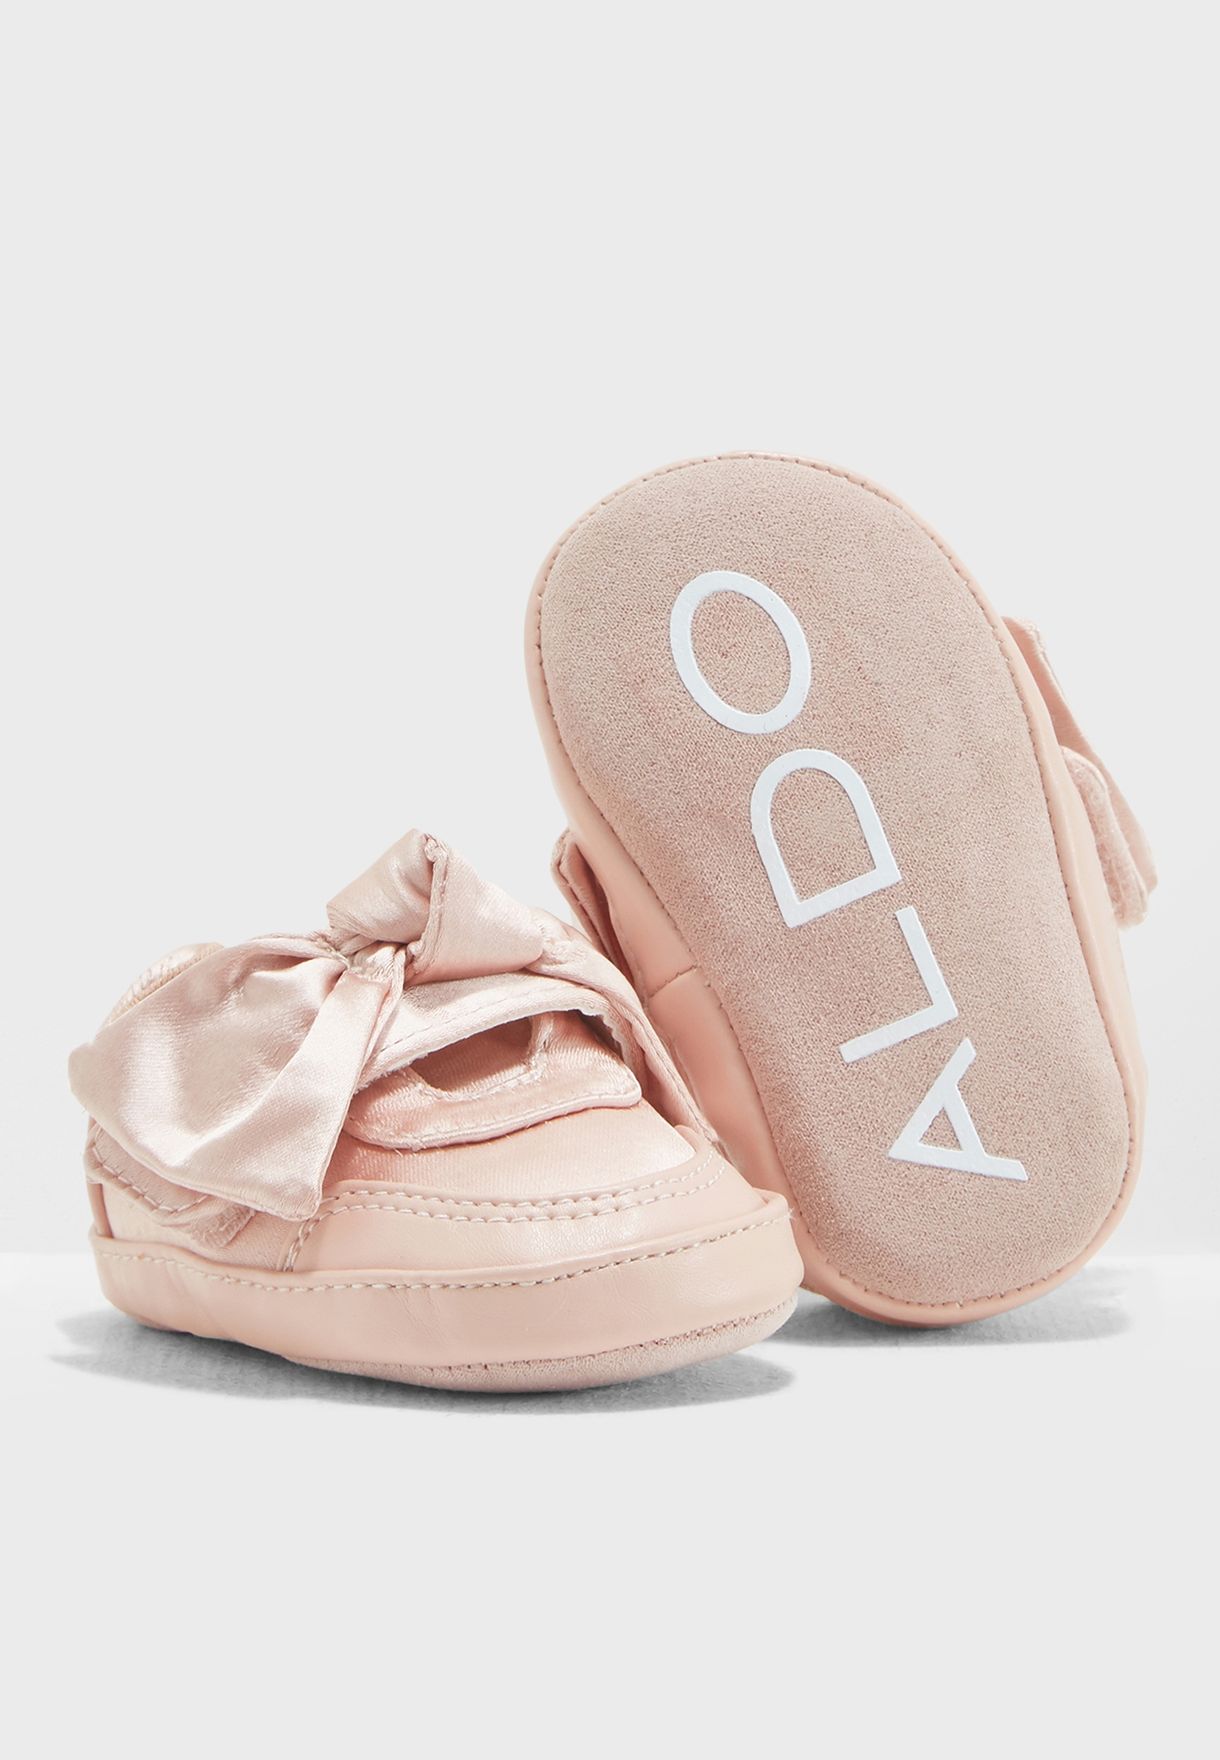 aldo infant shoes